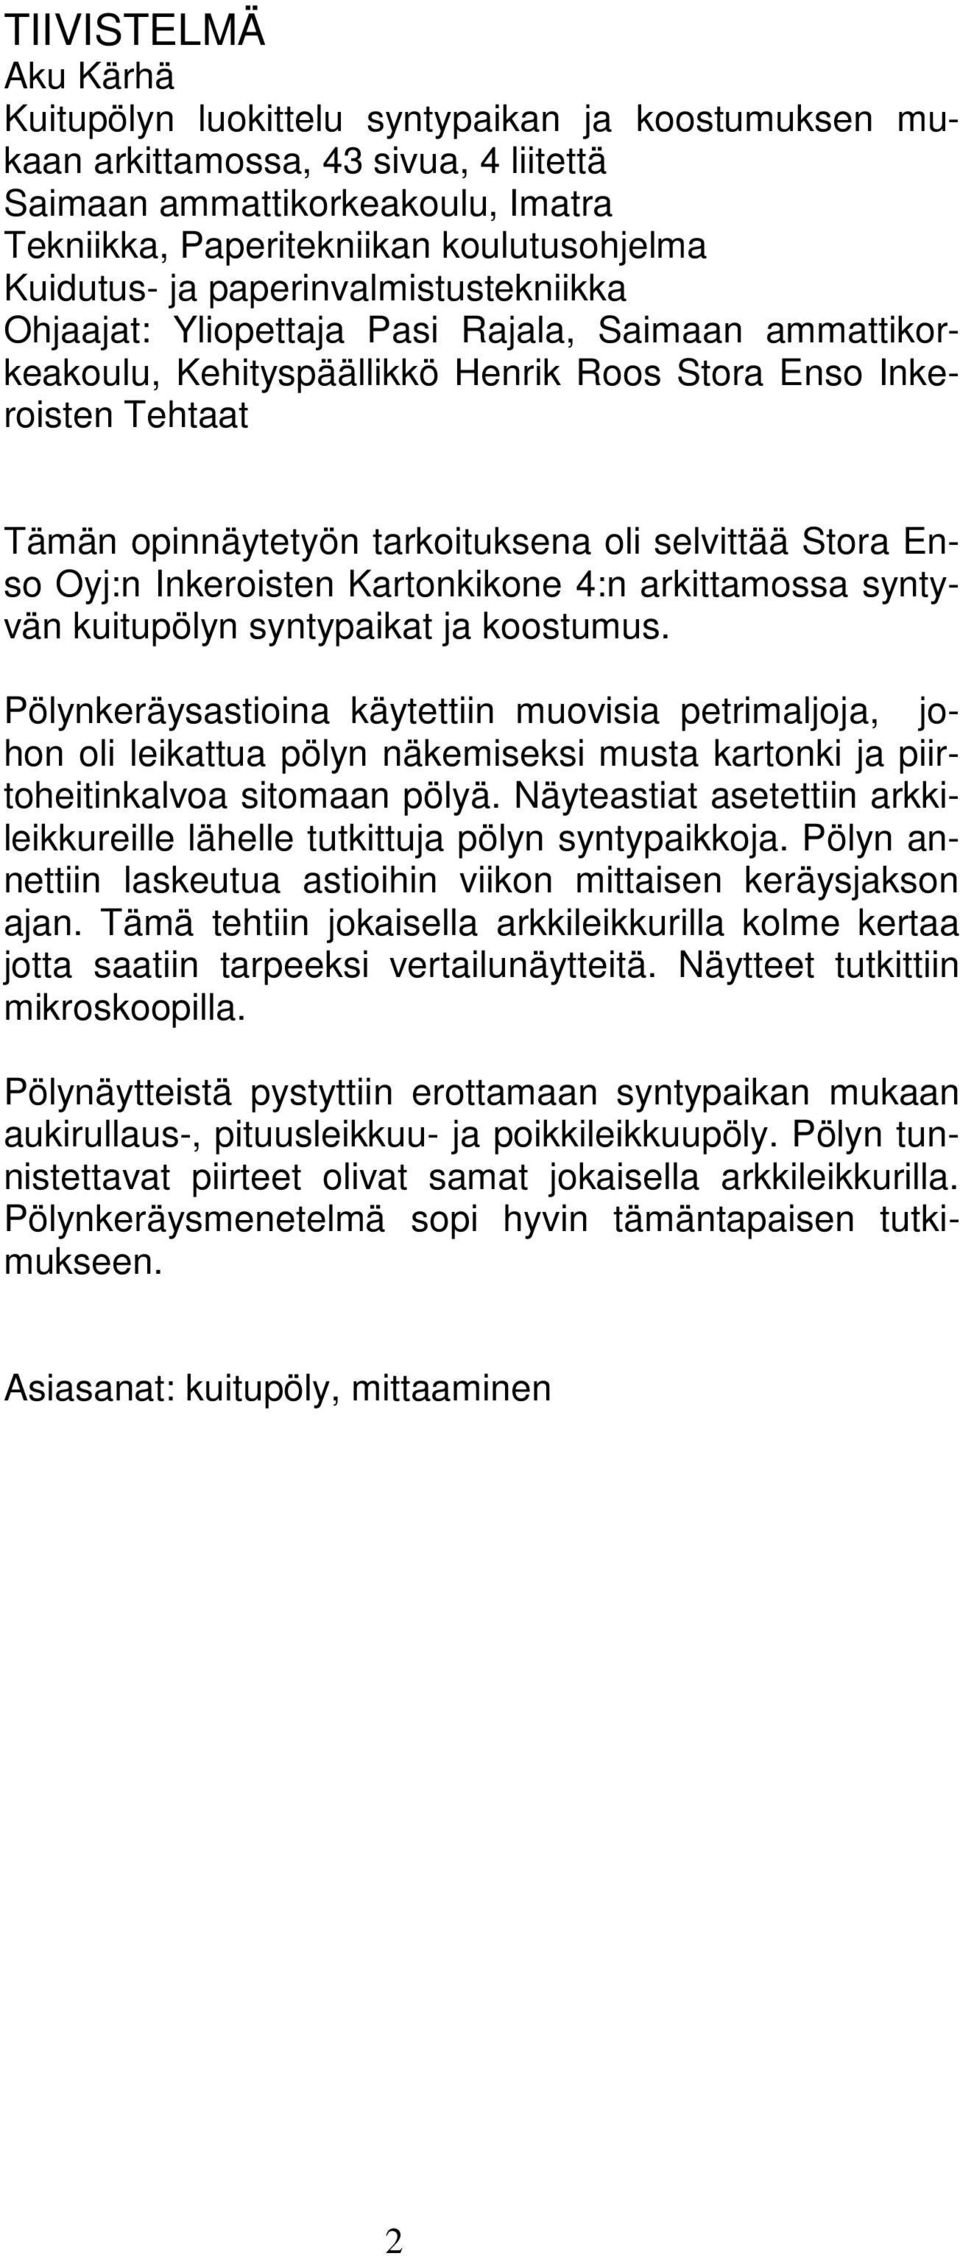 selvittää Stora Enso Oyj:n Inkeroisten Kartonkikone 4:n arkittamossa syntyvän kuitupölyn syntypaikat ja koostumus.